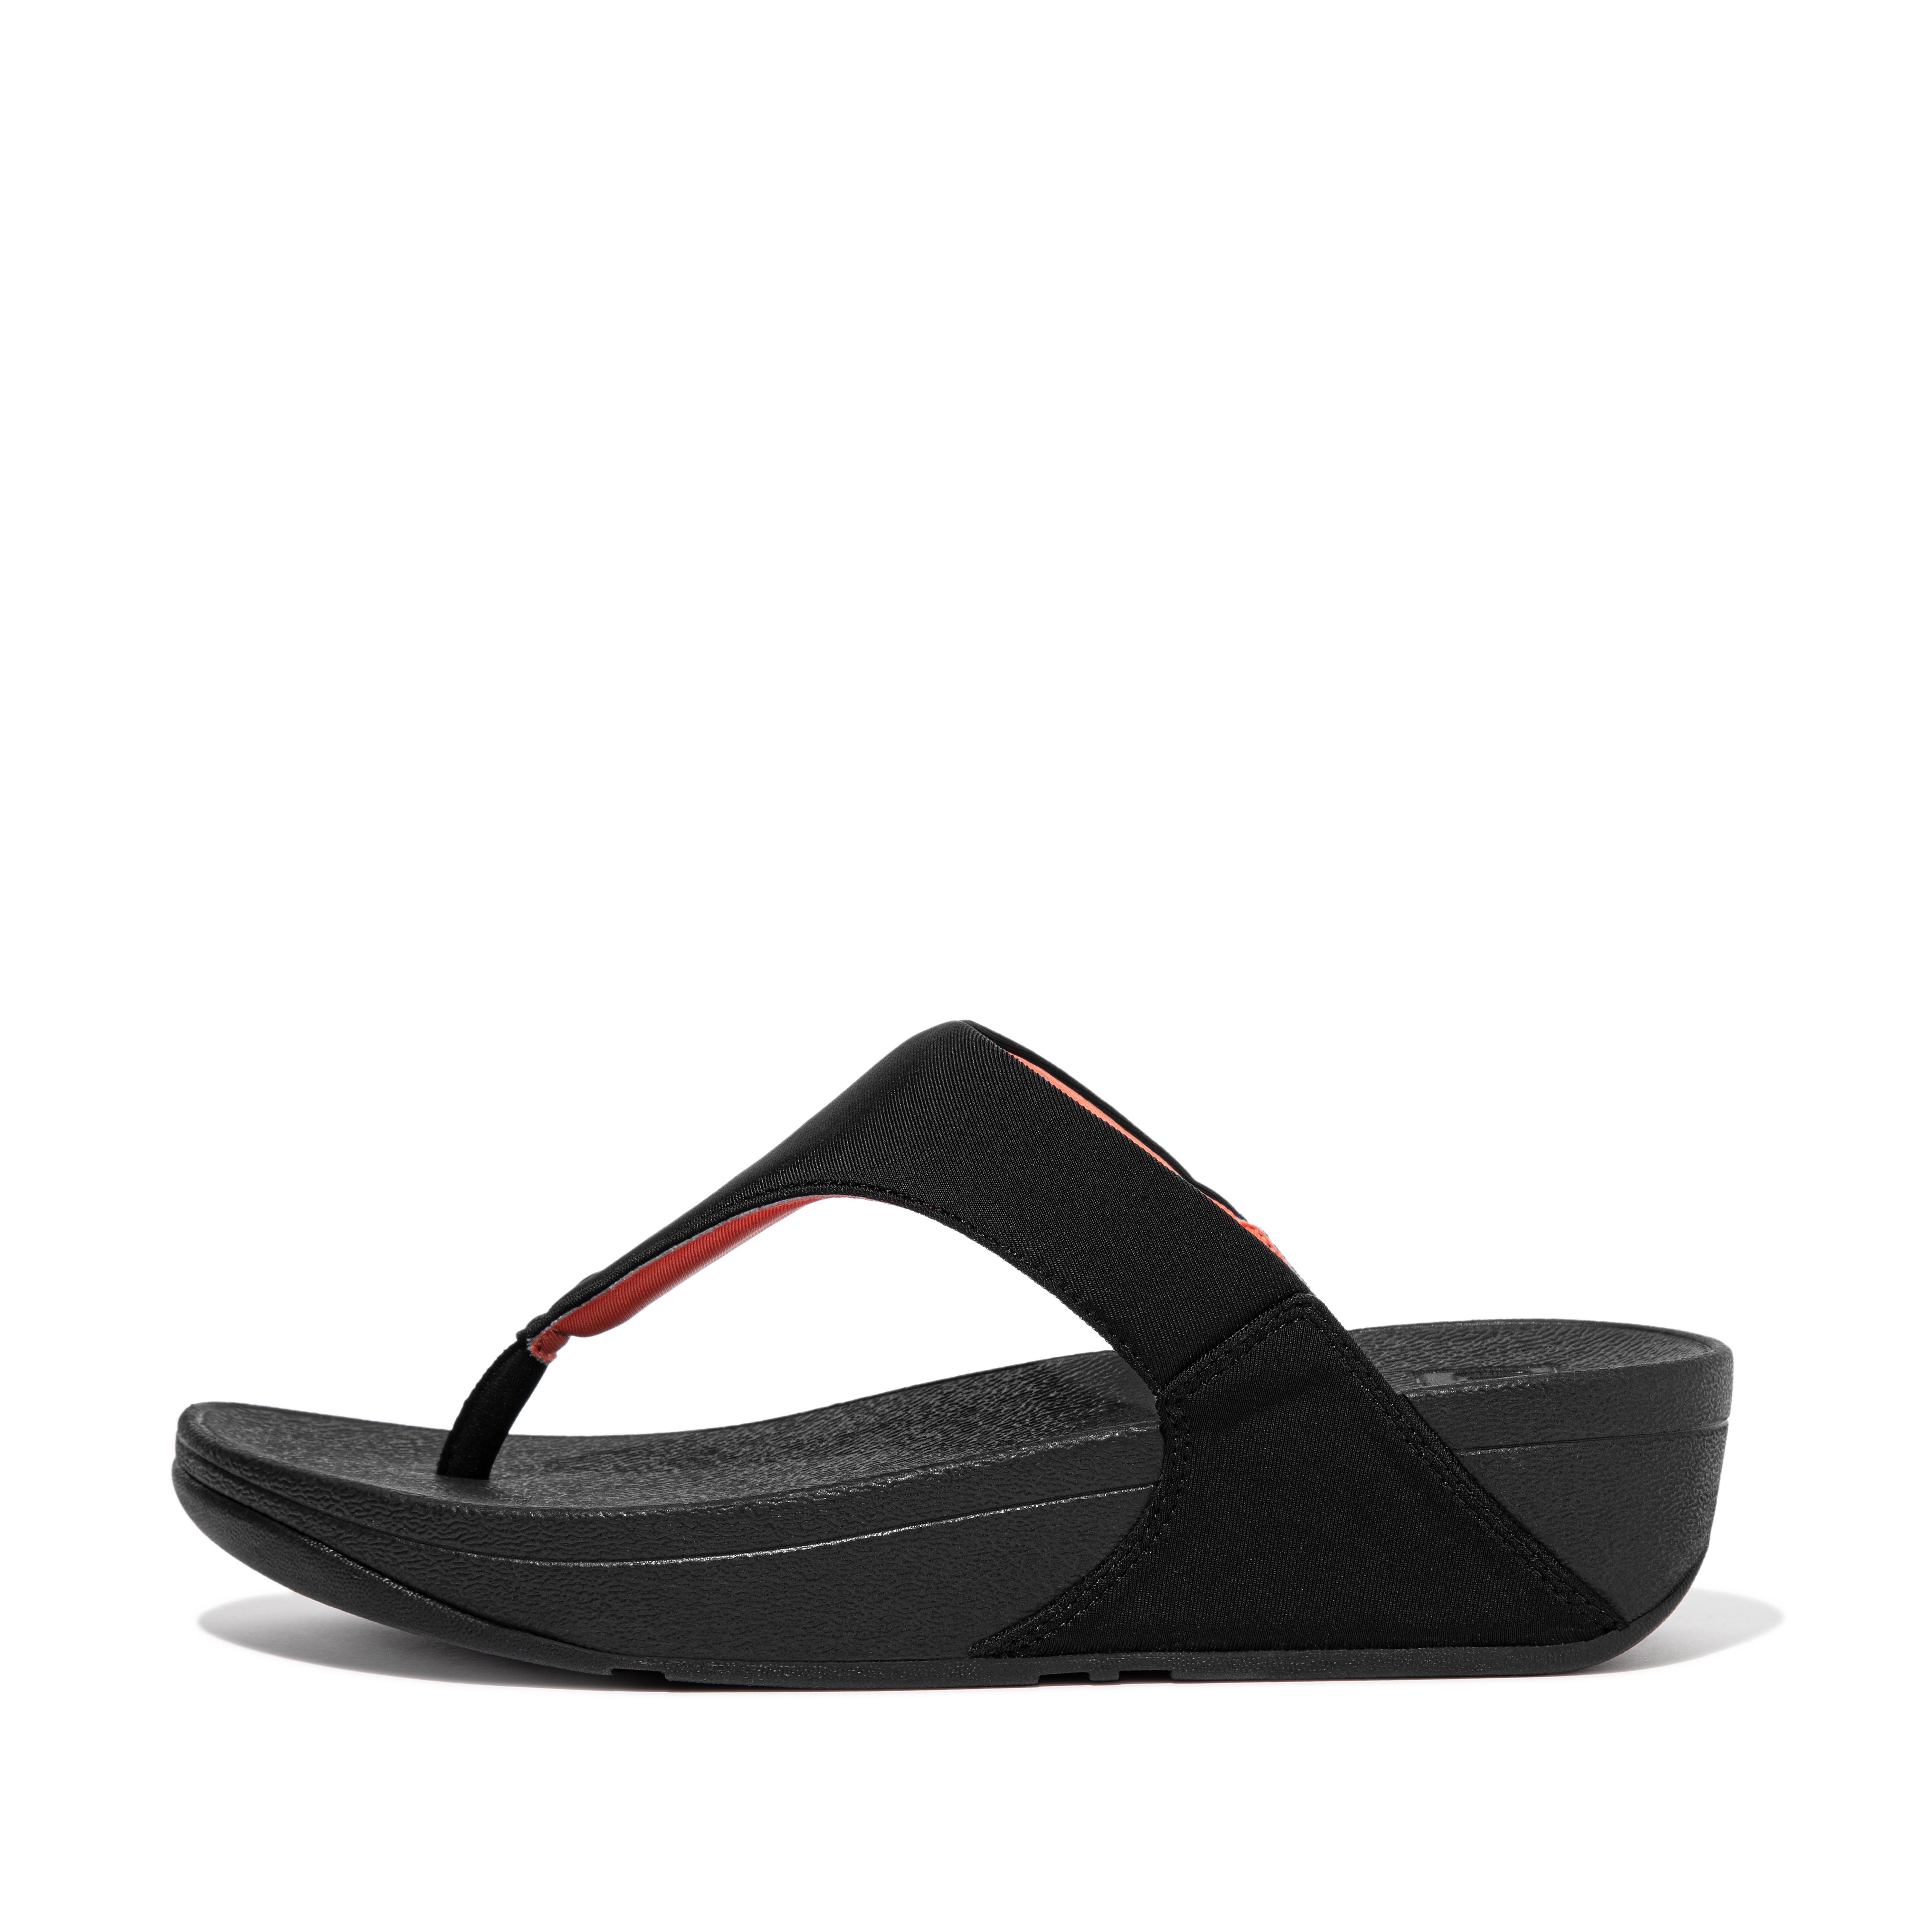 핏플랍 샌들 FitFlop LULU Water-Resistant Toe-Post Sandals,Black/Coral